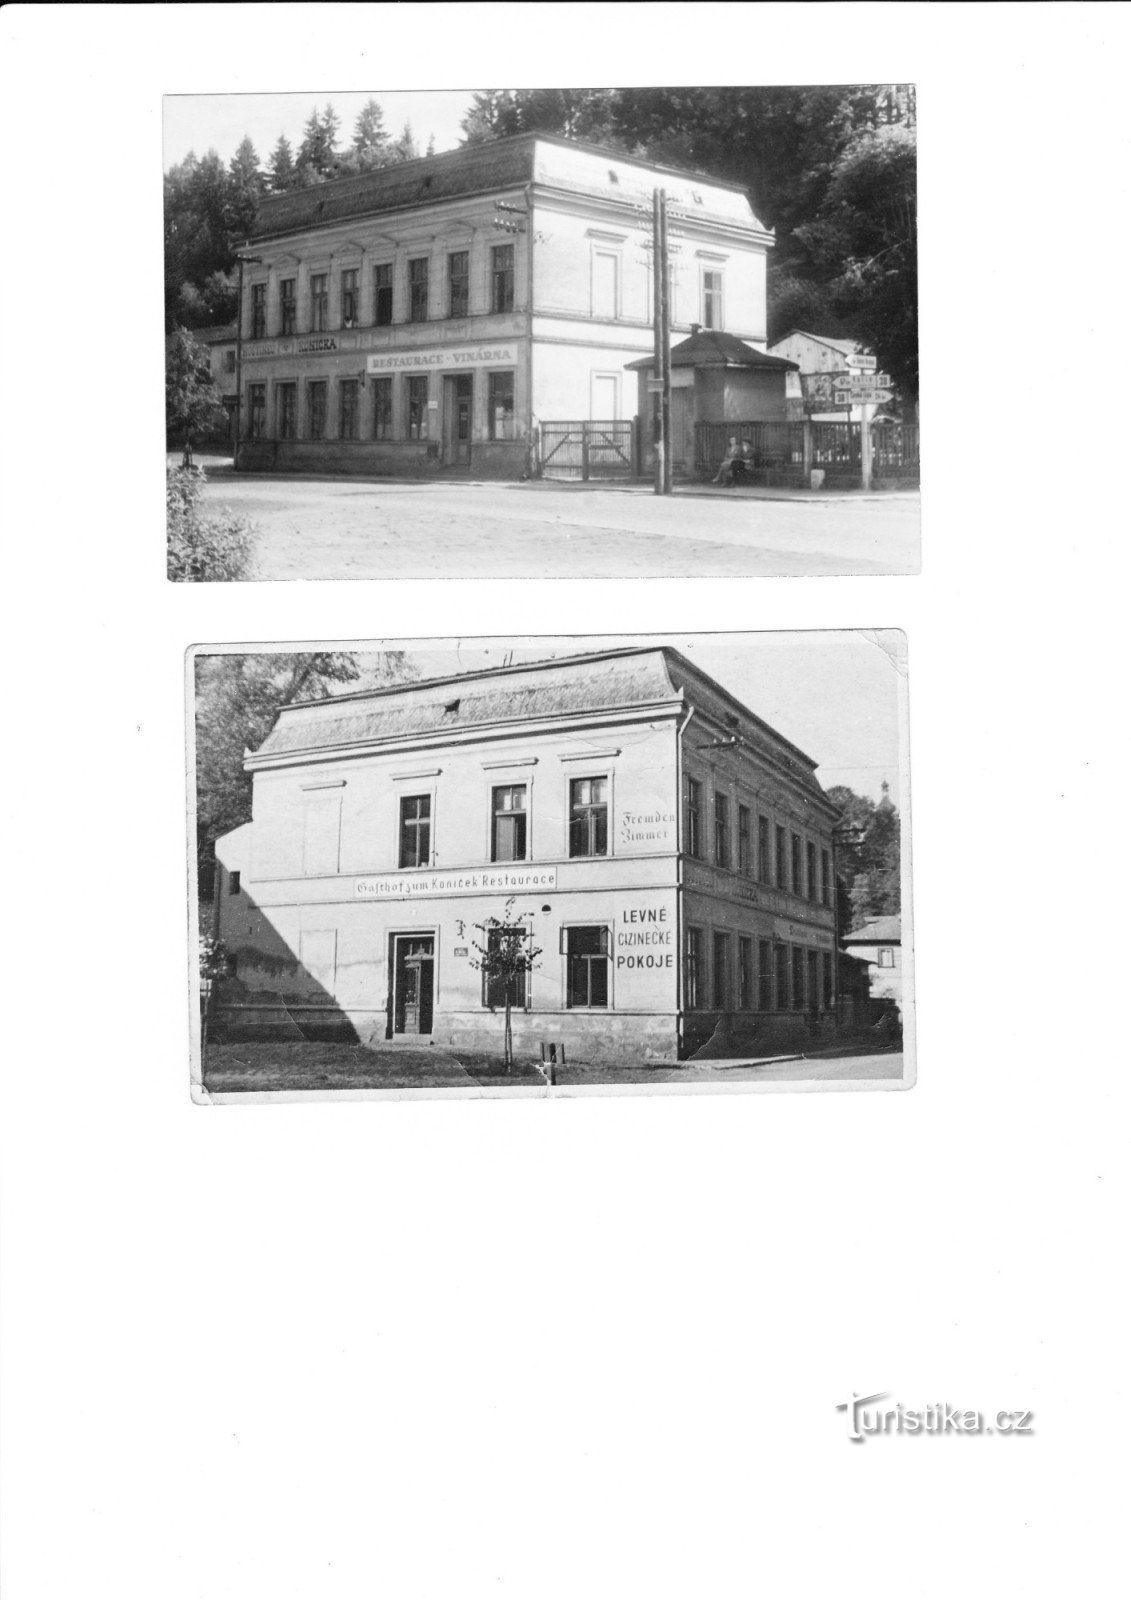 khách sạn ban đầu Koníček - tài sản của ông nội Šenekl